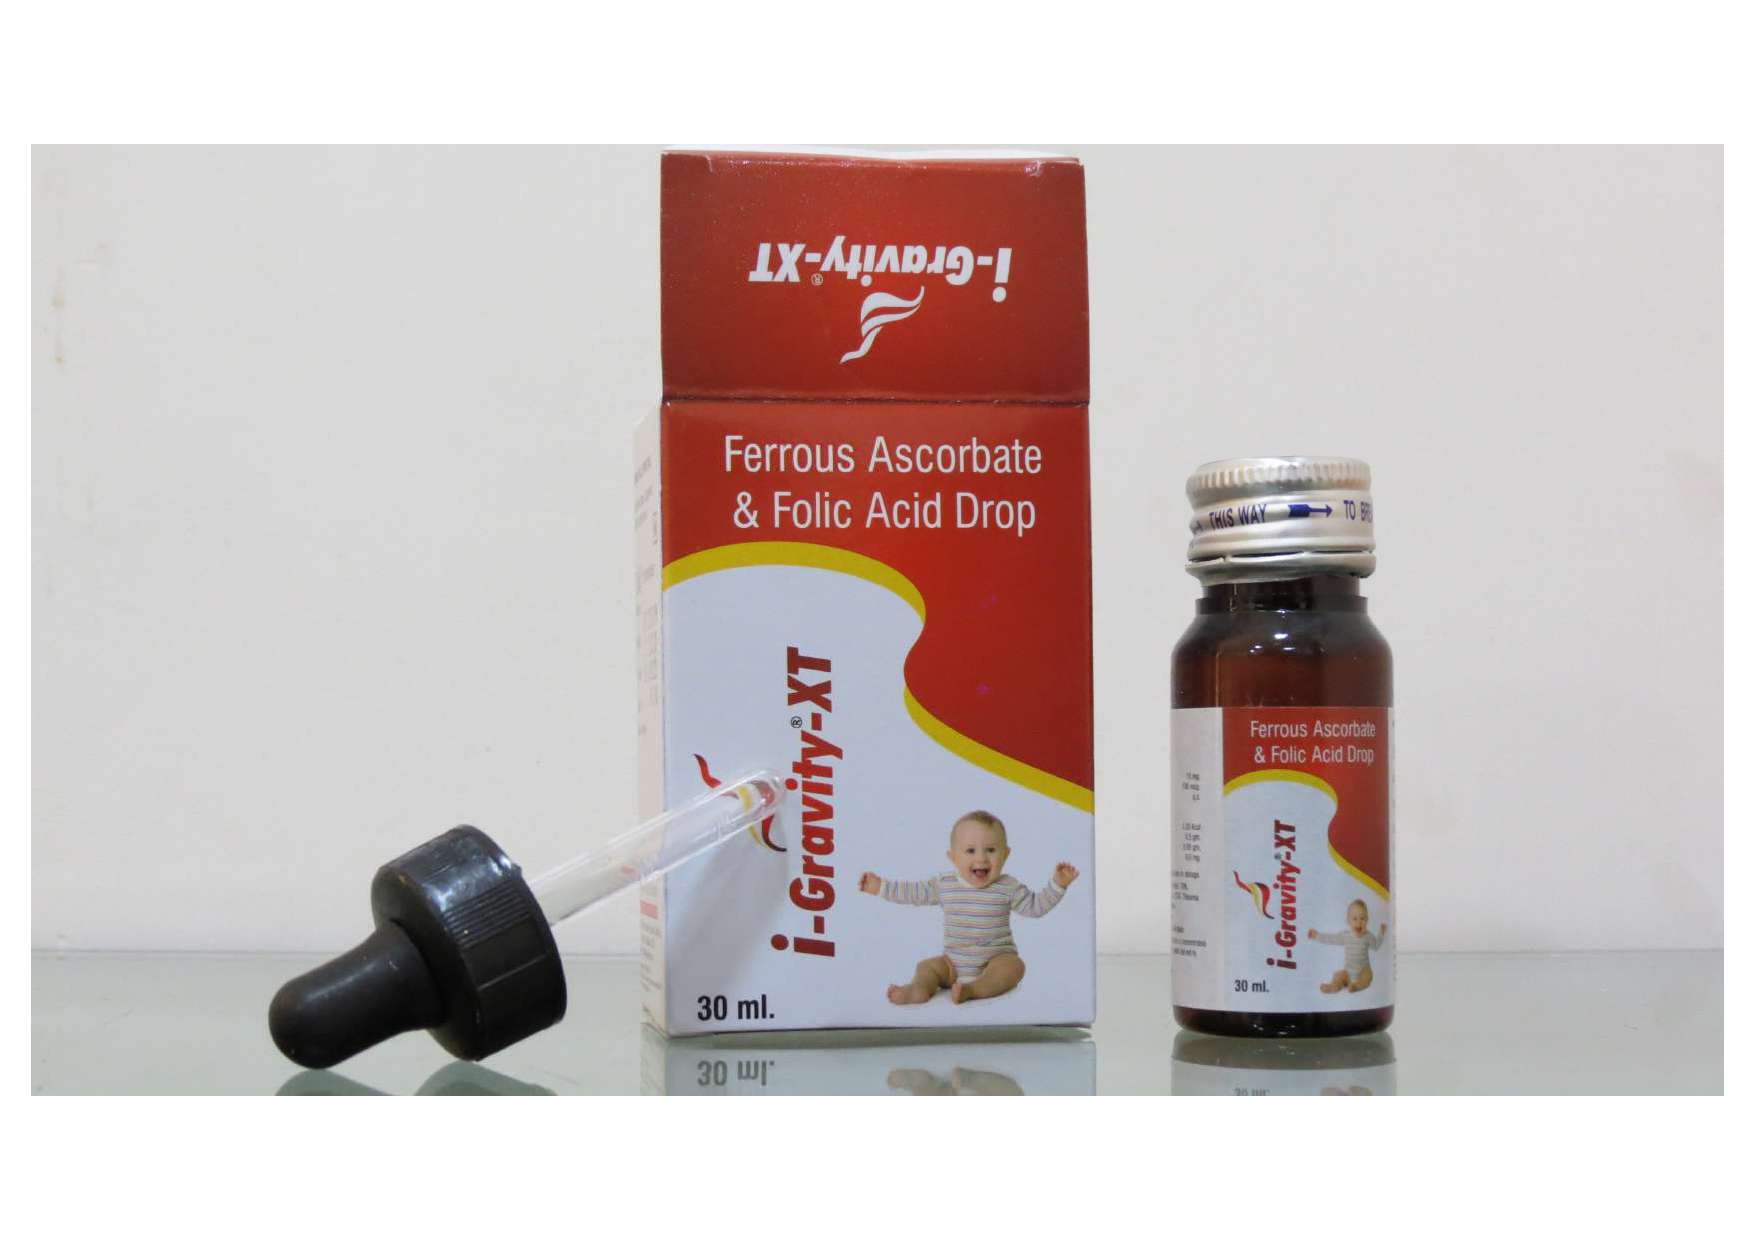 ferrous ascorbate 10mg + folic acid 100mcg
drops